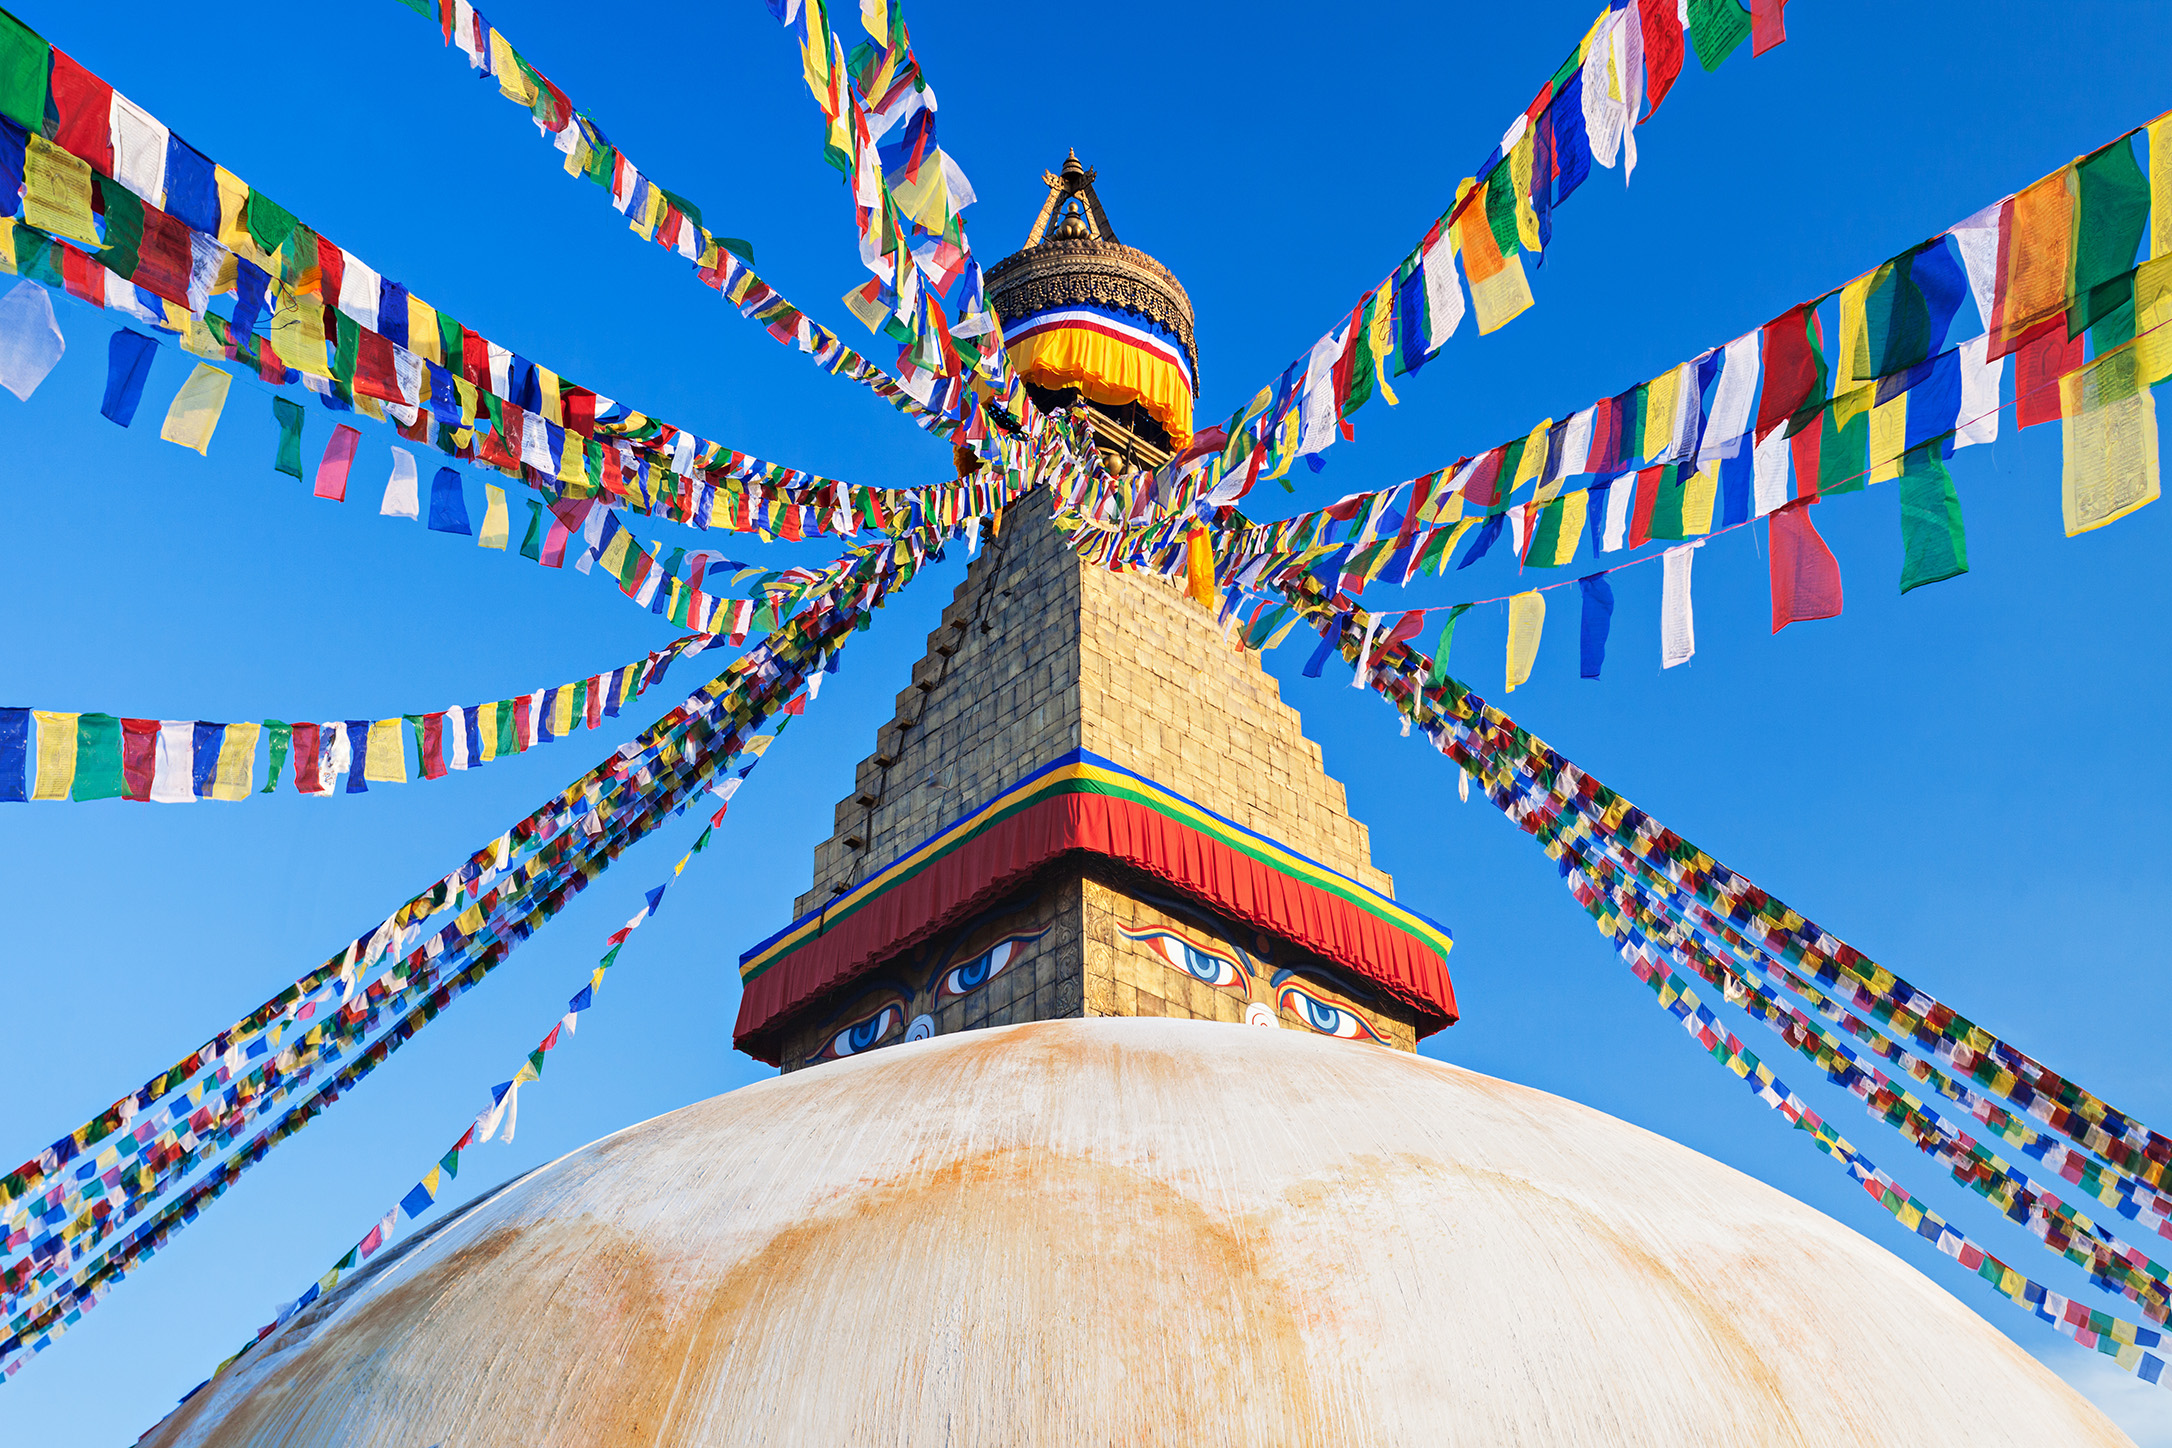 Räätälöity matka - Nepalin kiertomatka - Katmandu ja Himalajan huiput matkat